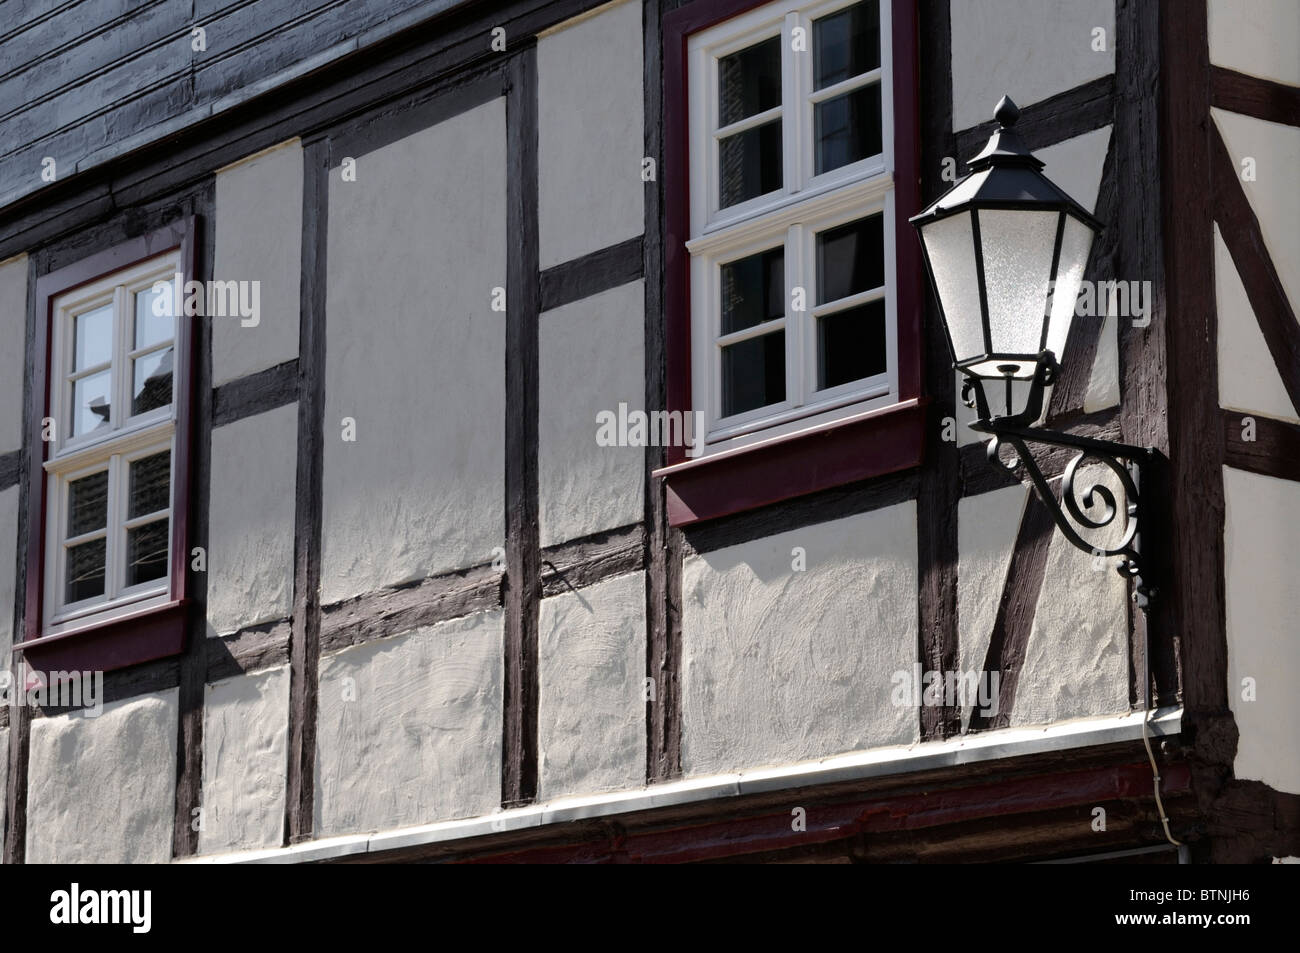 Alte Straßenlampe Und Fachwerkhaus, Wernigerode, Deutschland. -Alte Straßenlaterne und Fachwerkhaus, Wernigerode, Deutschland. Stockfoto